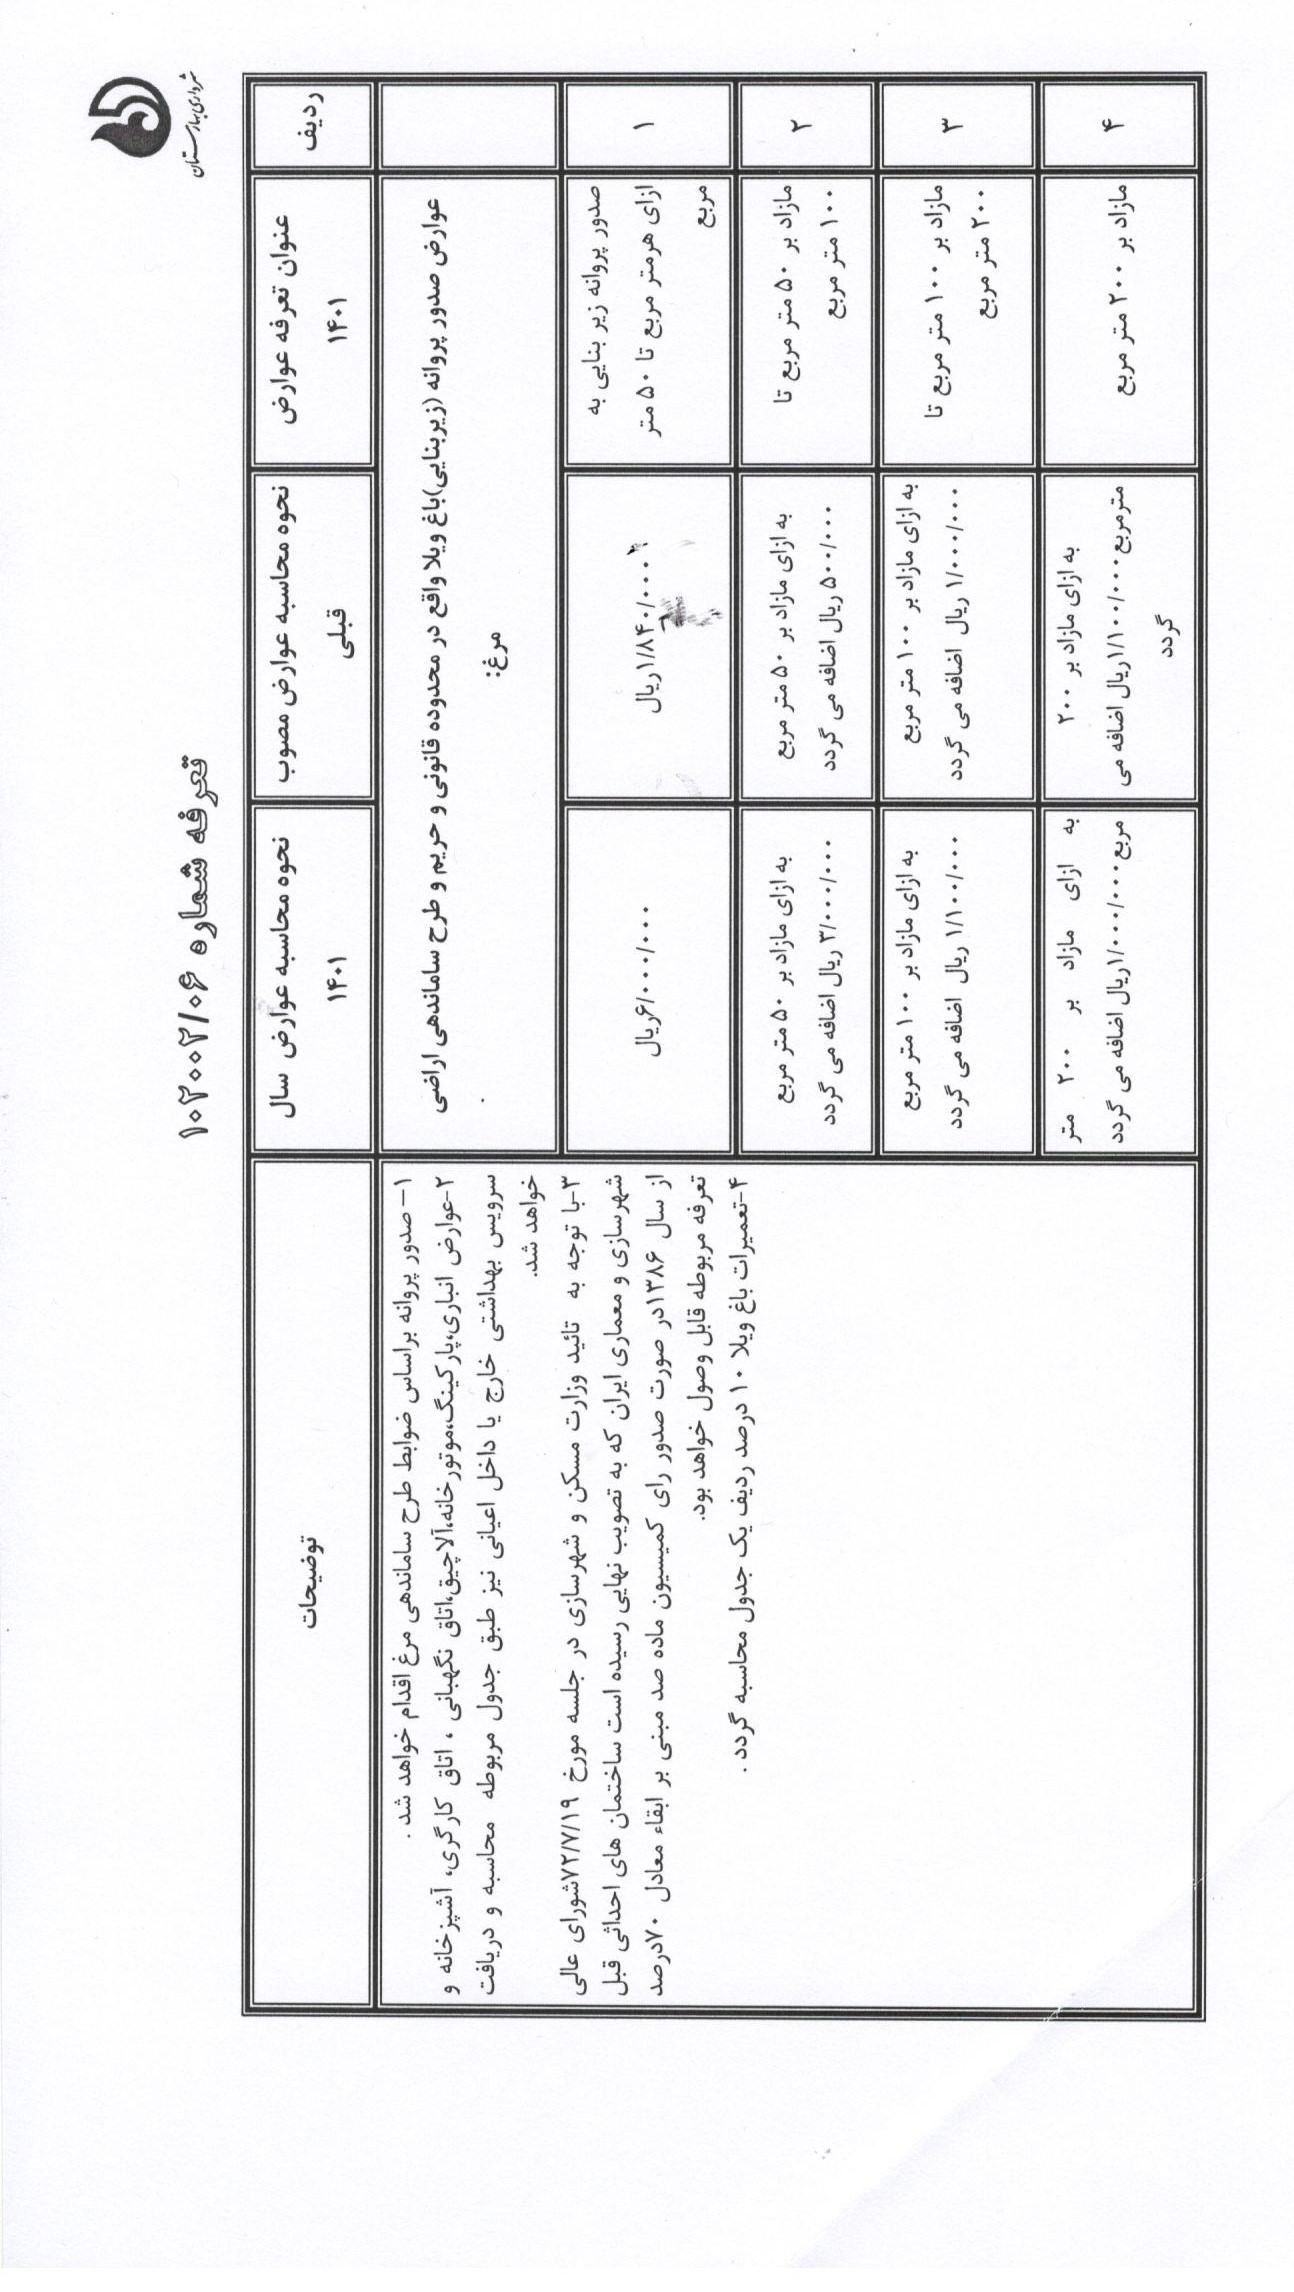 اعلام-عمومی-تغییرات-عوارض-محلی-سال-1401-شهرداری-بهارستان